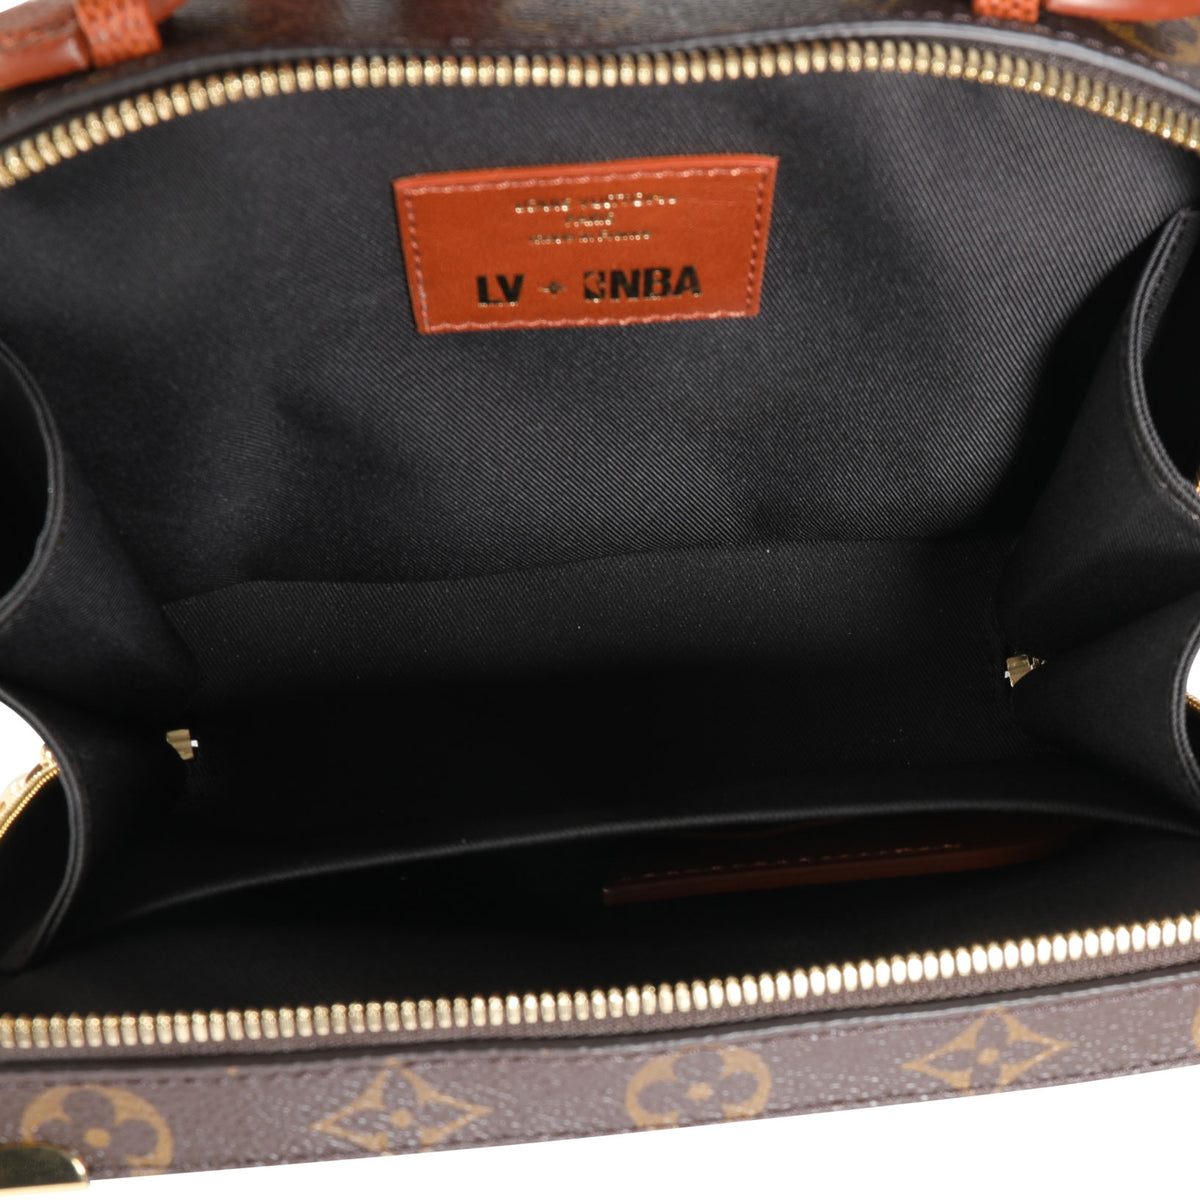 Louis Vuitton x NBA Handle Trunk Bag Monogram Canvas - ShopStyle